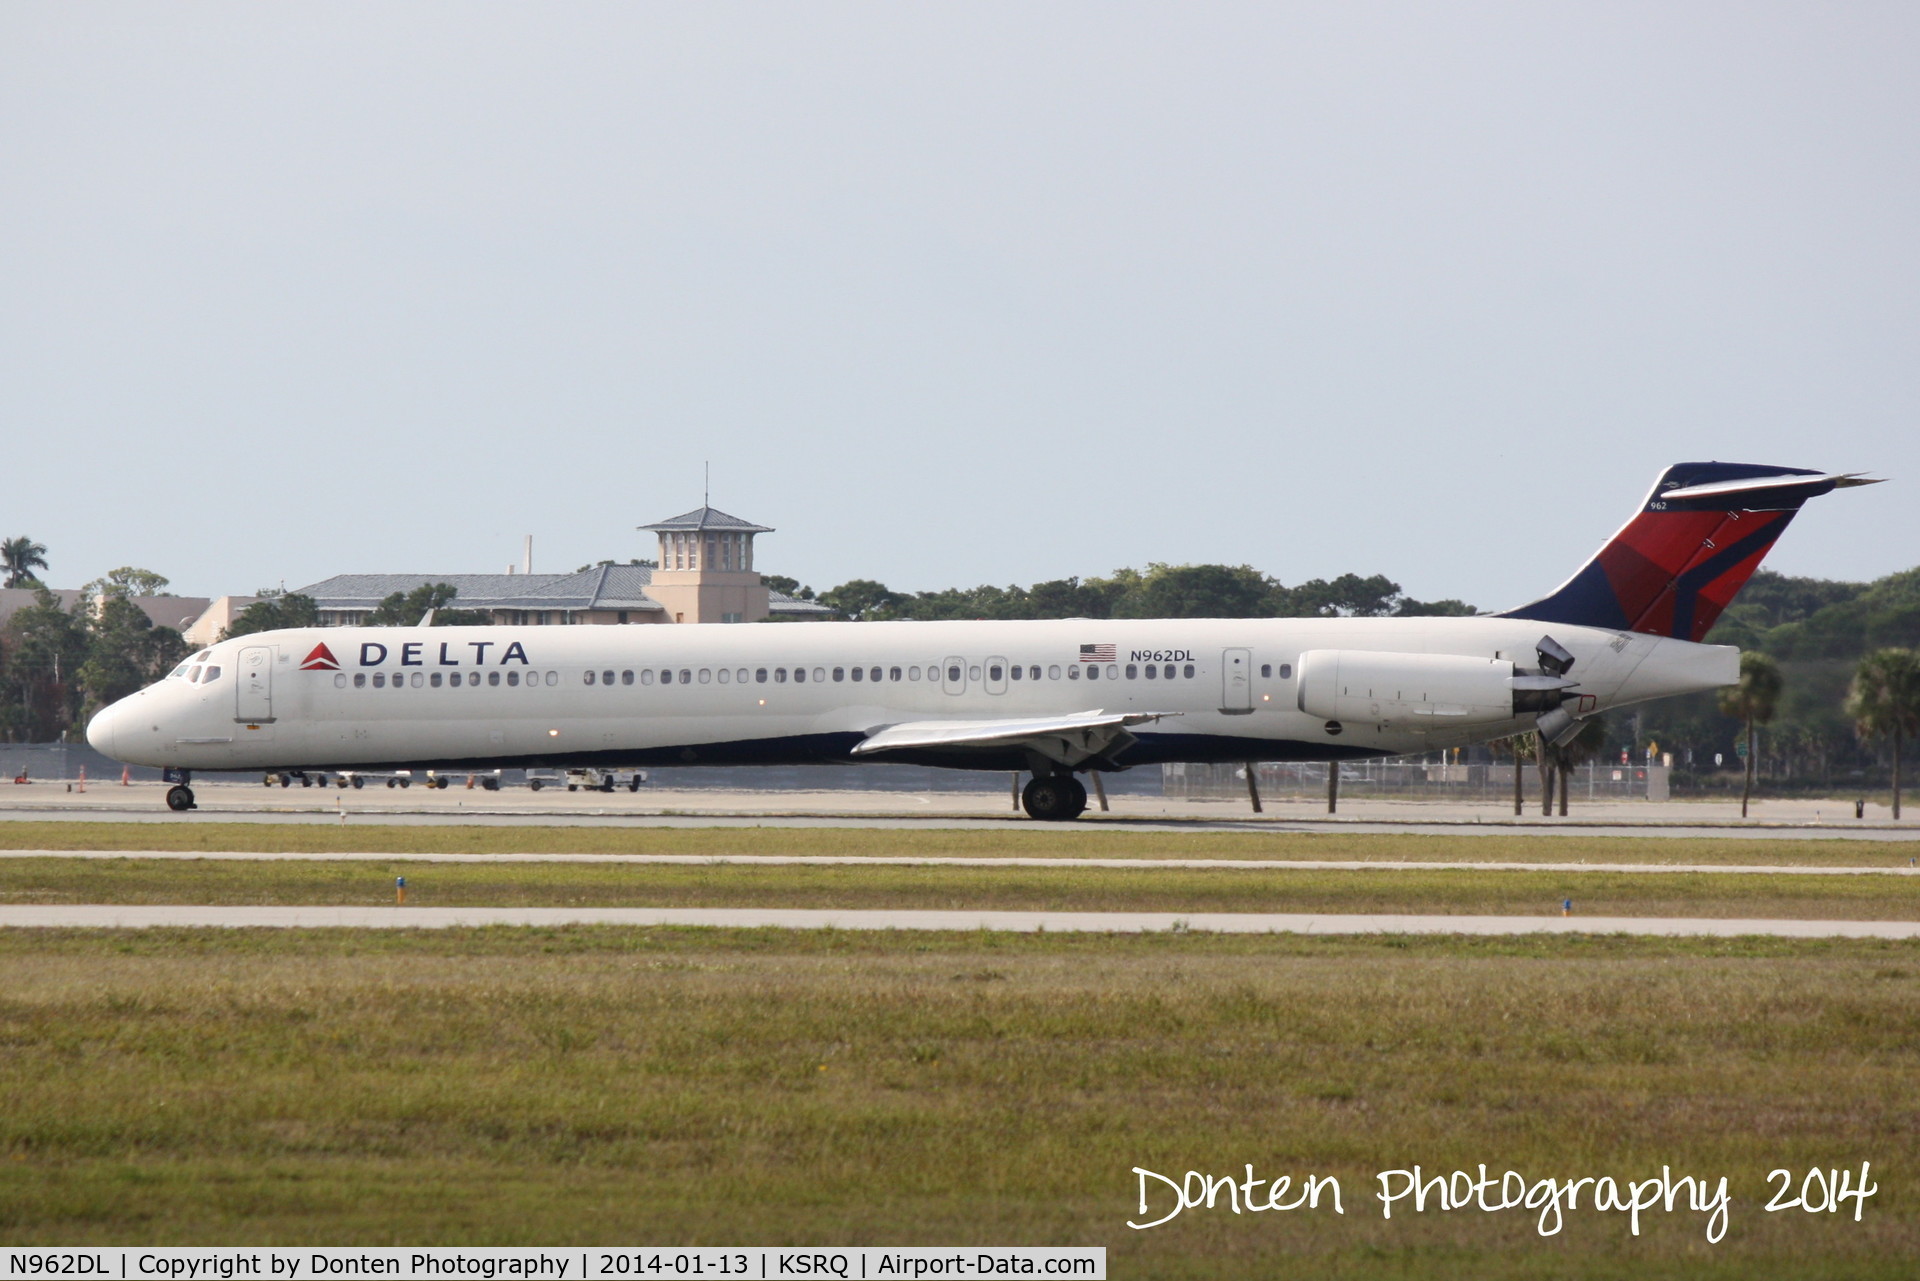 N962DL, 1990 McDonnell Douglas MD-88 C/N 49981, Delta Flight 2298 (N962DL) arrives at Sarasota-Bradenton International Airport following a flight from Hartsfield-Jackson Atlanta International Airport